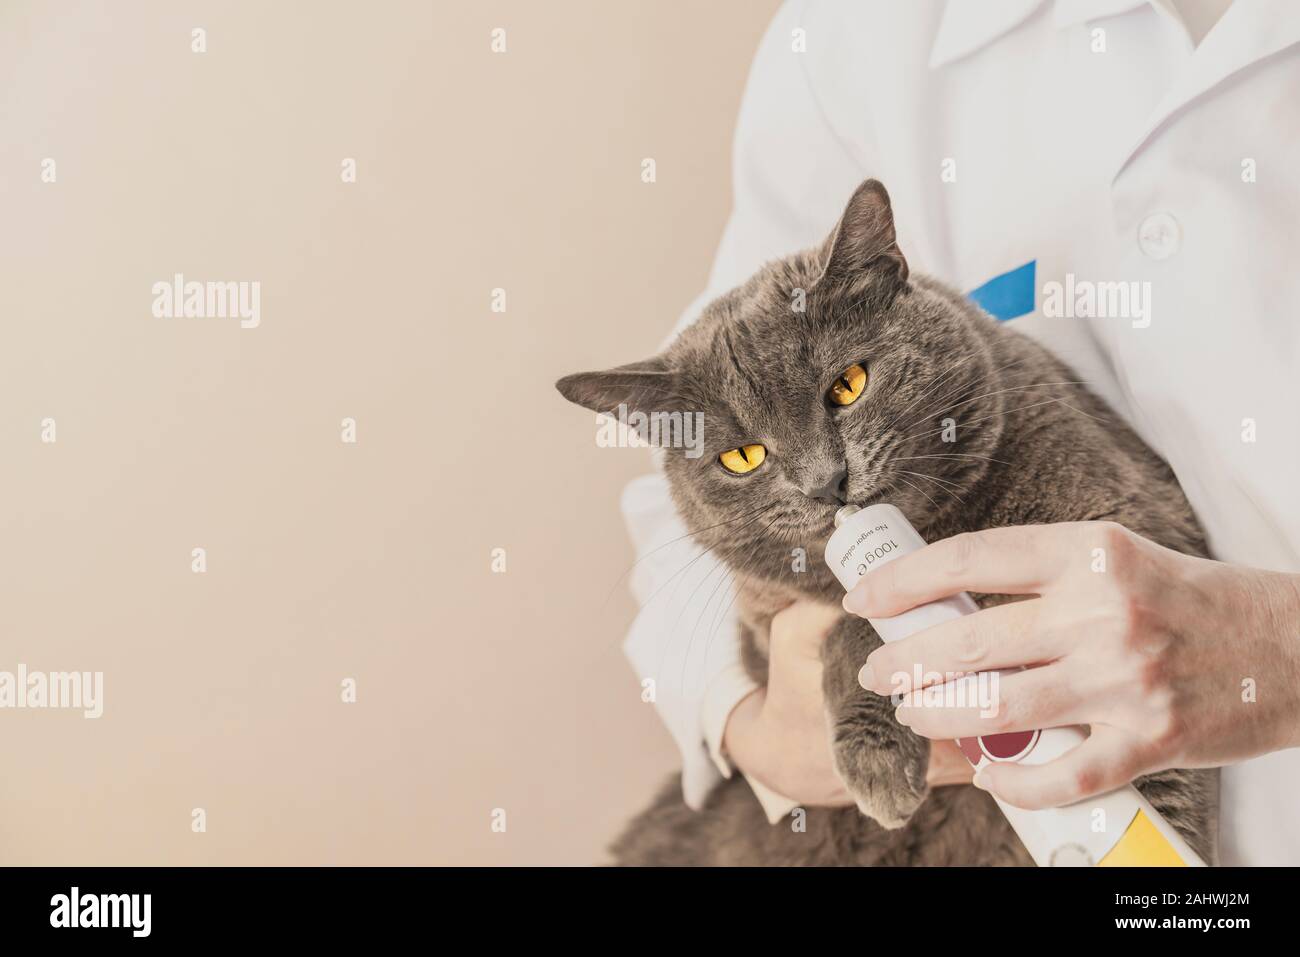 Adorable chat gris se fait à partir de la médecine vétérinaire, la main. Vet professionnel fournissant le traitement des animaux. L'amour de la nature concept. Imag horizontale Banque D'Images